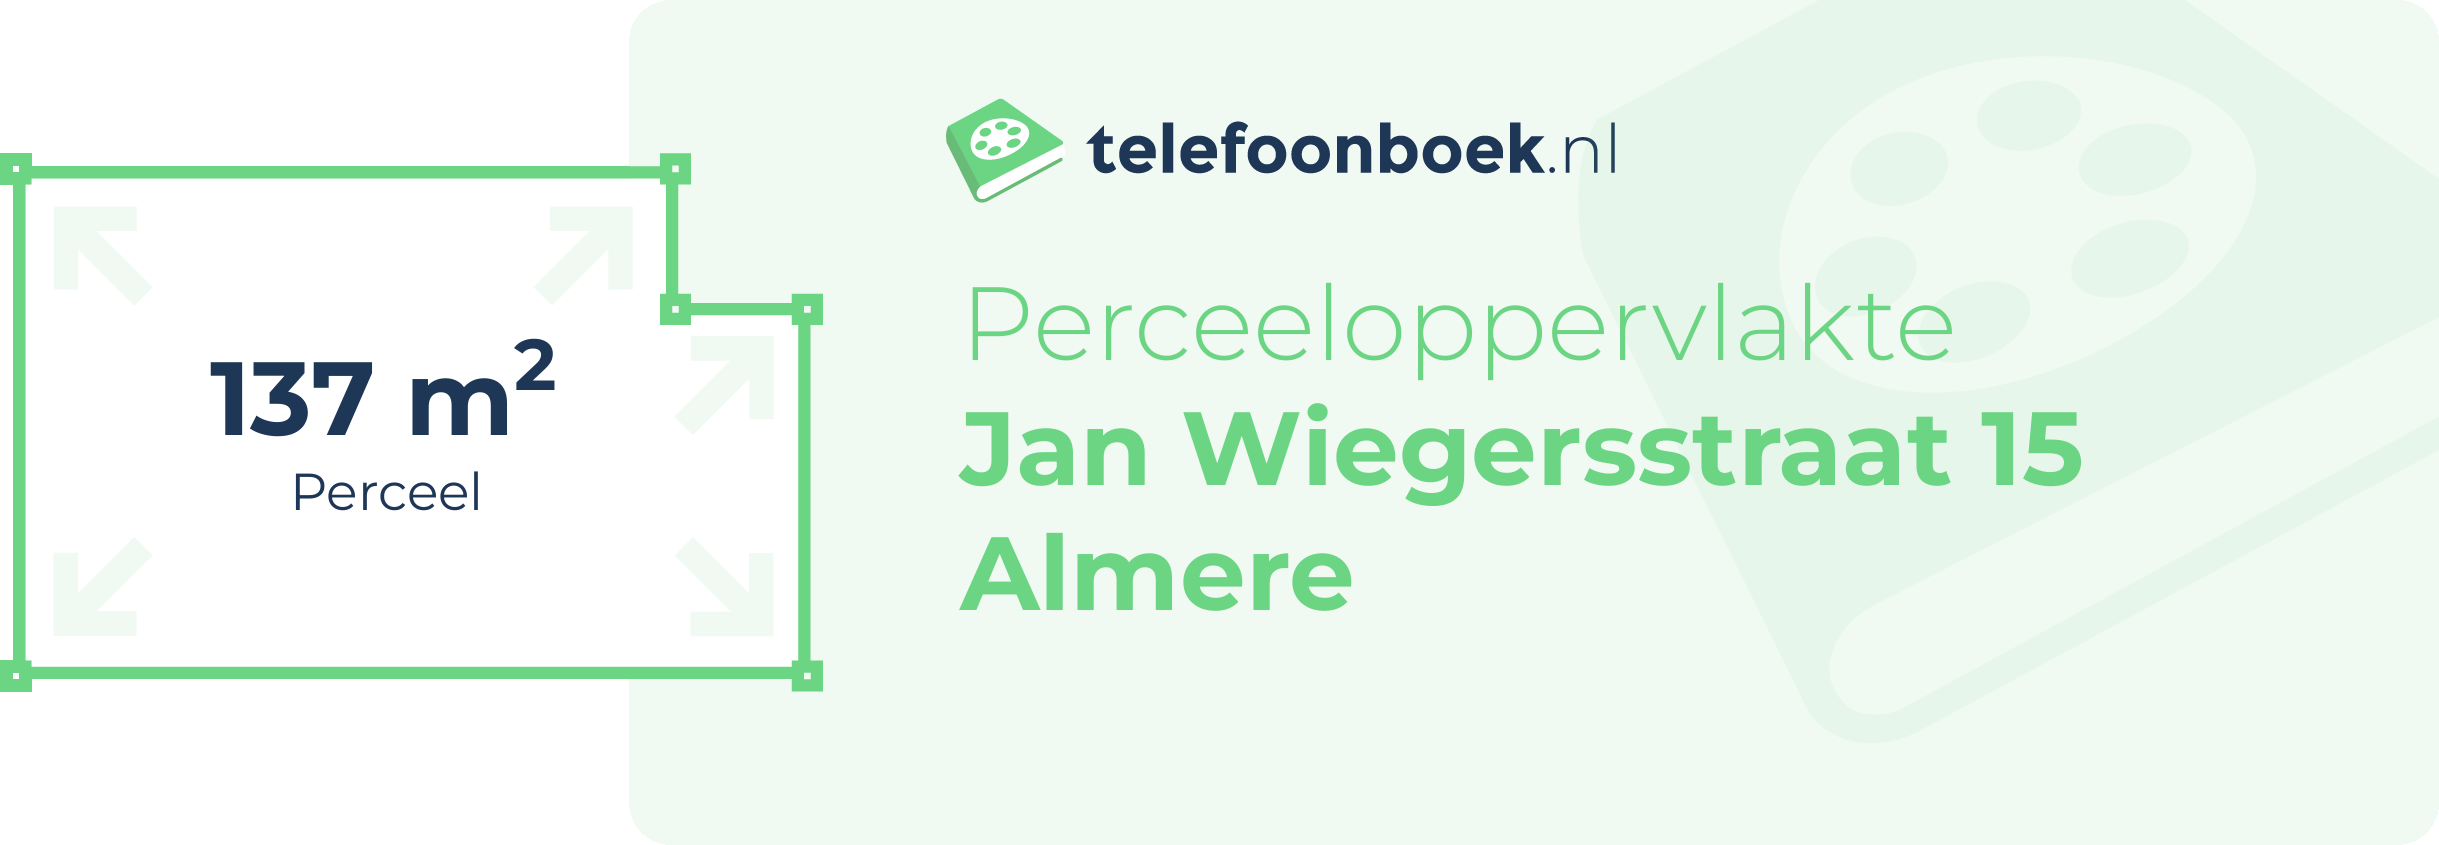 Perceeloppervlakte Jan Wiegersstraat 15 Almere